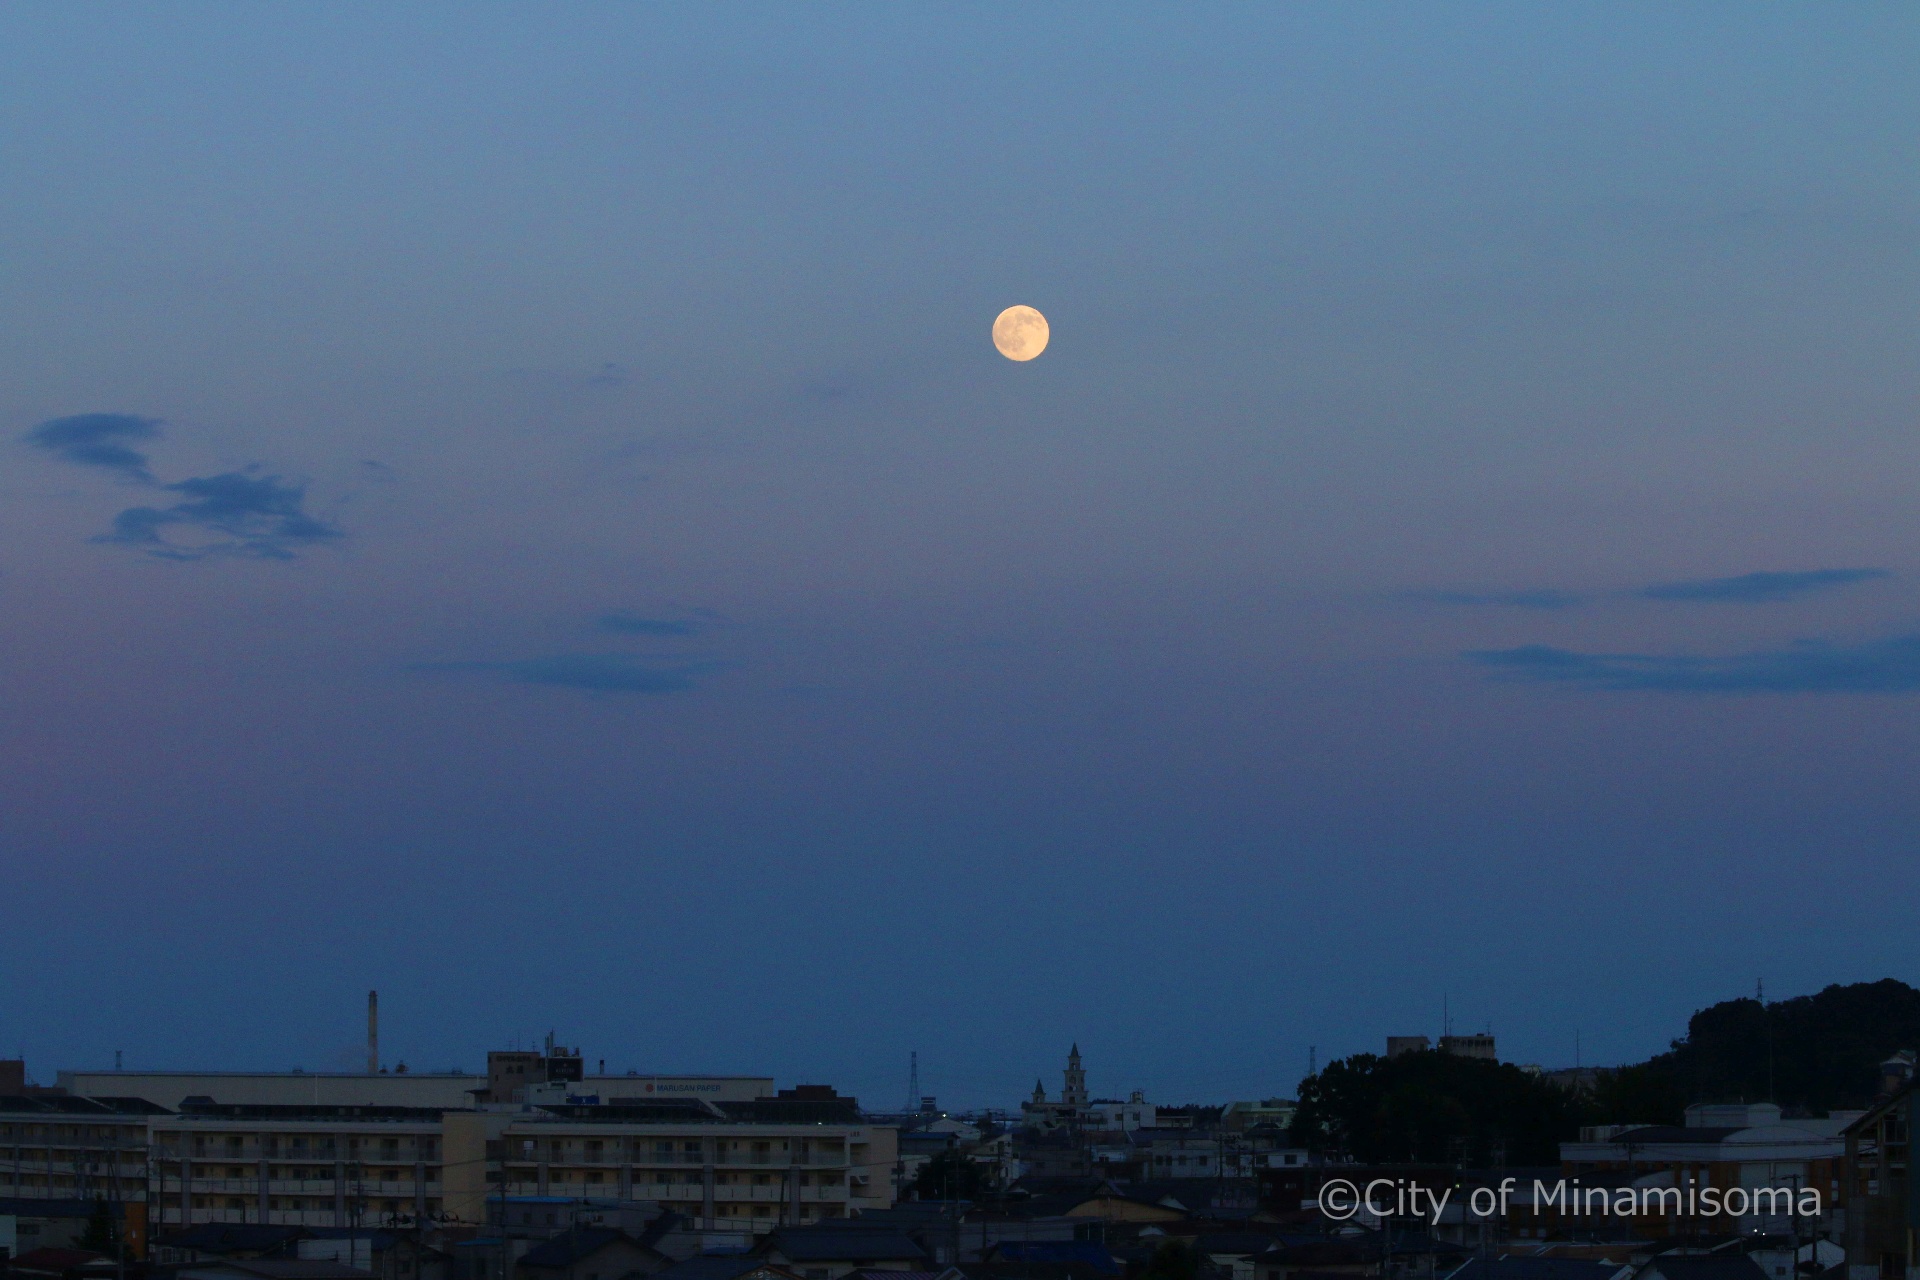 市役所の屋上から見た町の様子。薄青い夕暮れの空に、丸い月が浮かんでいる。